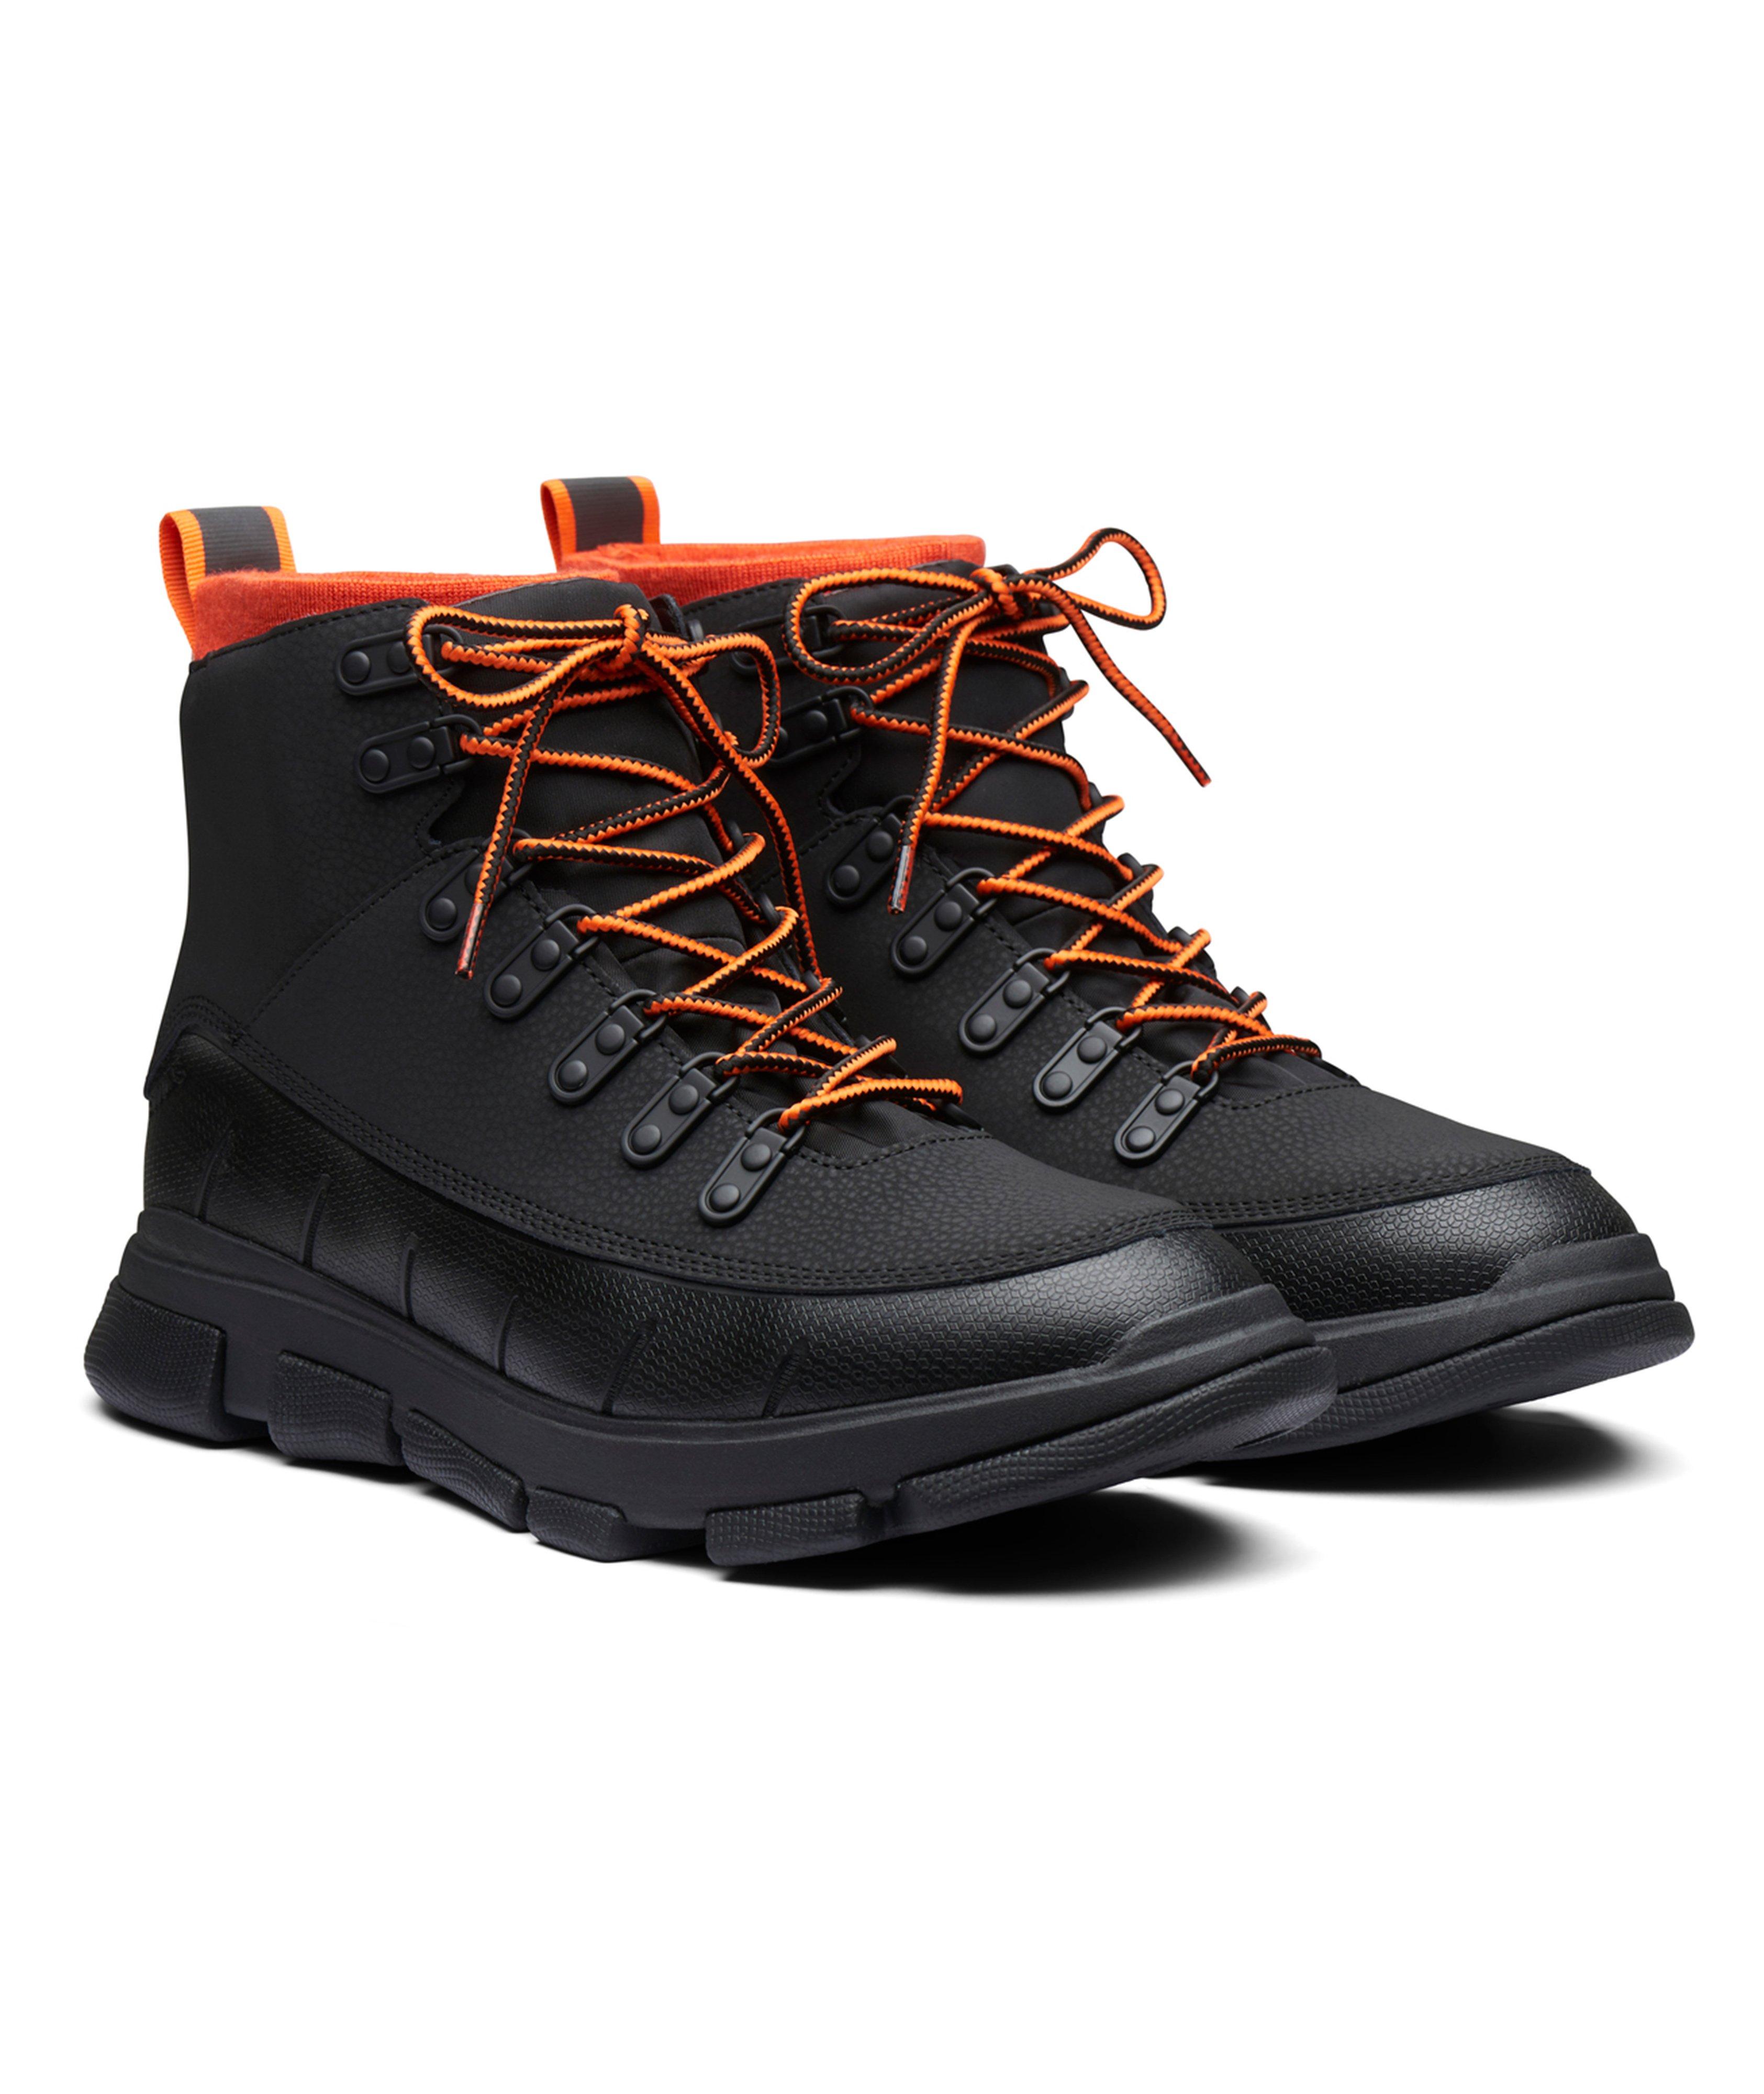 City Hiker II Waterproof Boots image 0